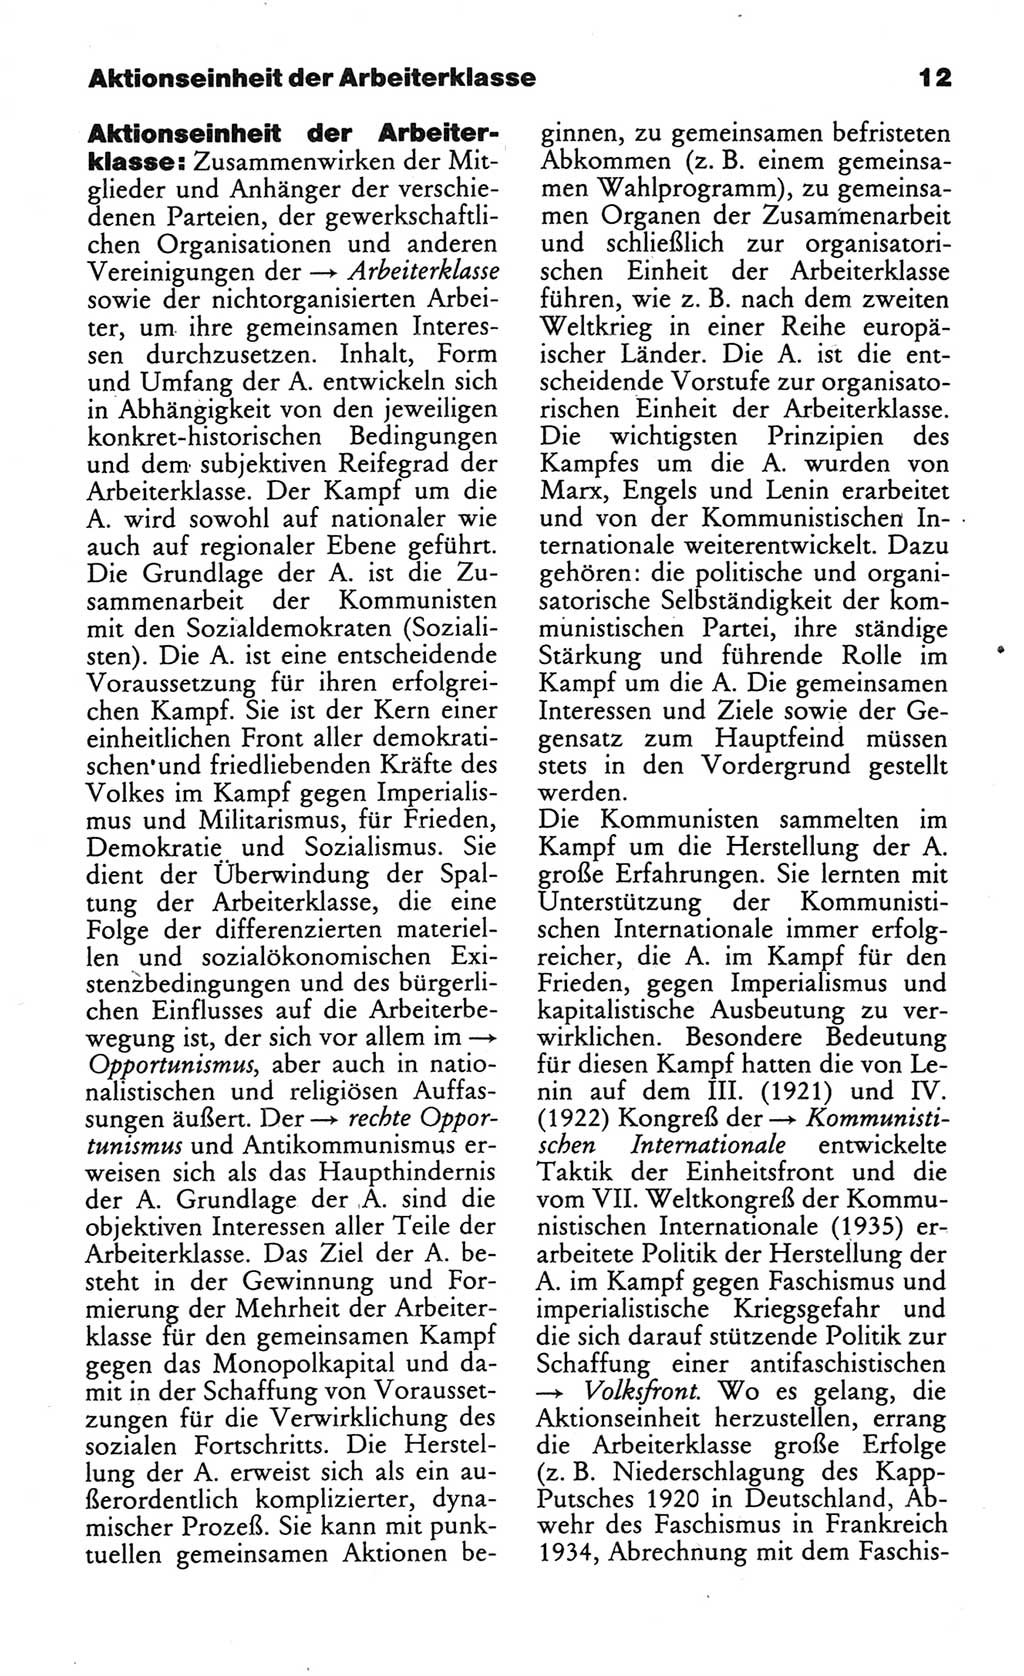 Wörterbuch des wissenschaftlichen Kommunismus [Deutsche Demokratische Republik (DDR)] 1984, Seite 12 (Wb. wiss. Komm. DDR 1984, S. 12)